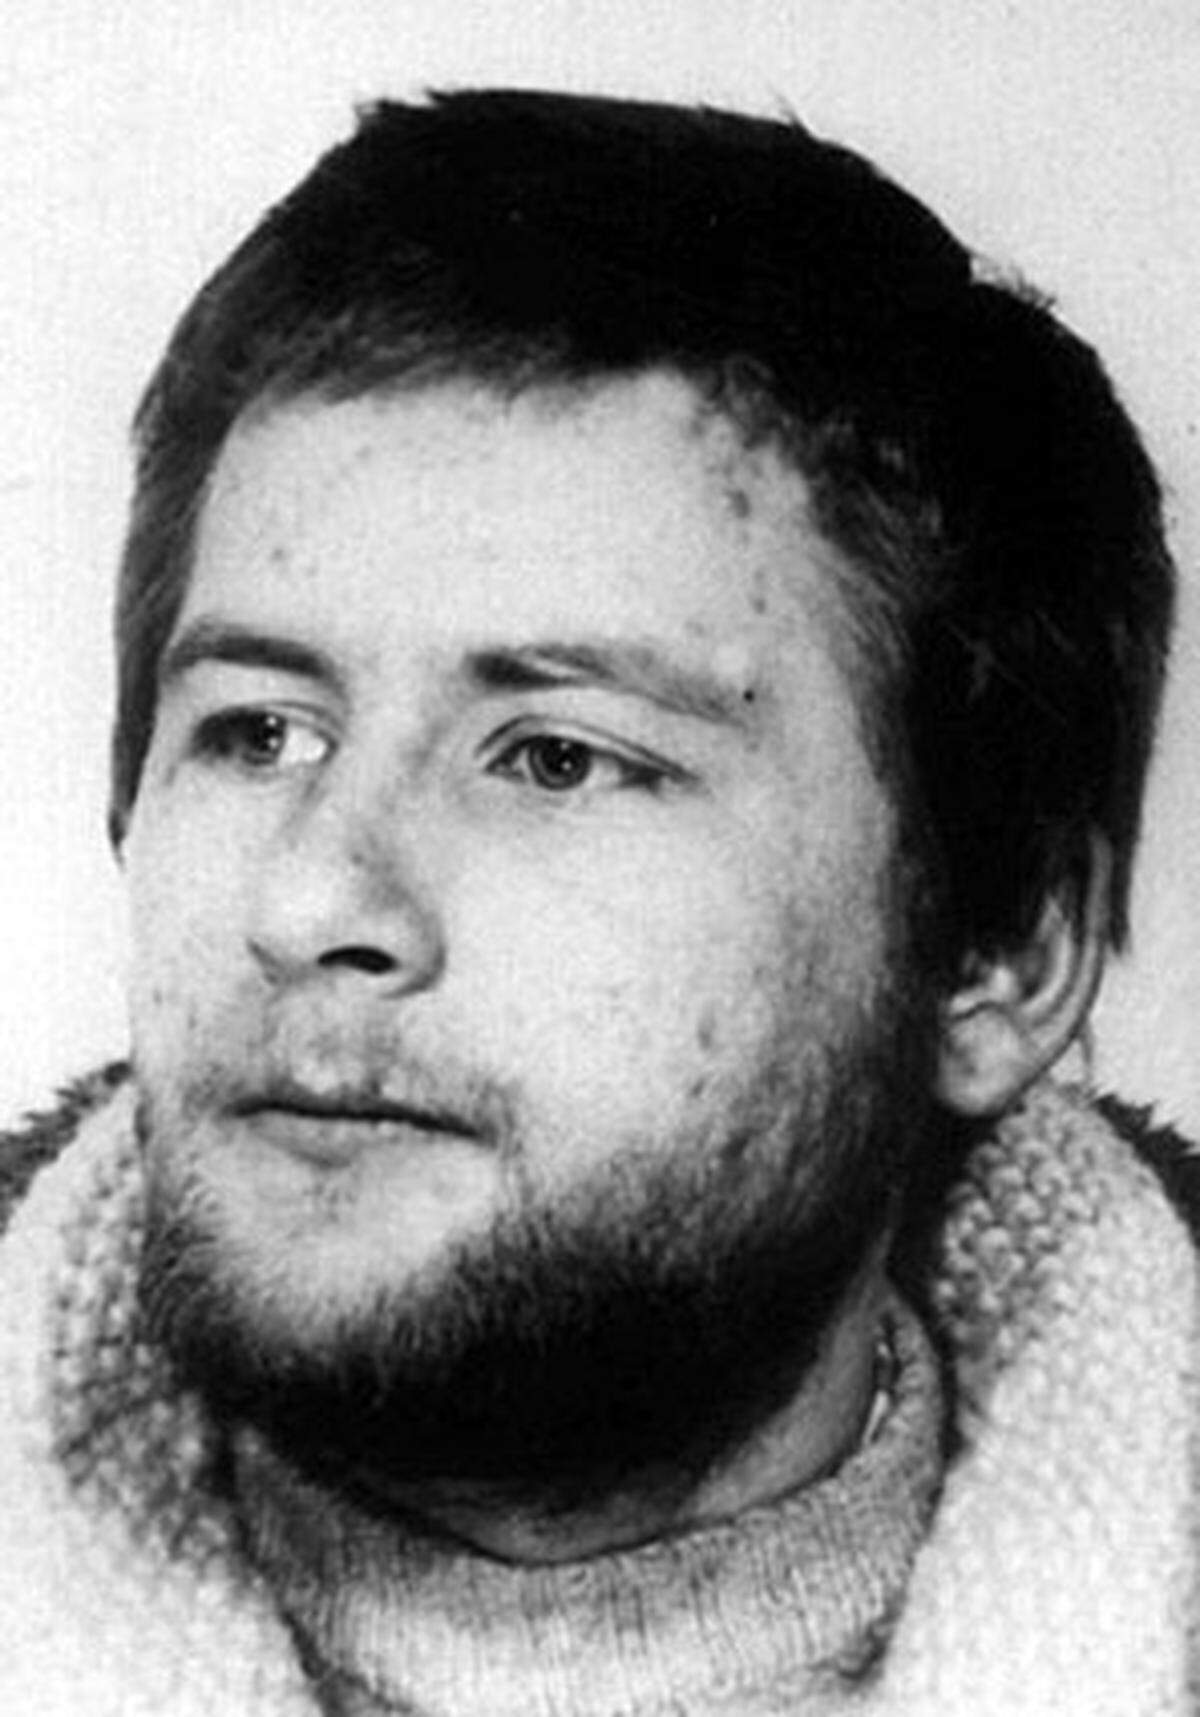 27. Juni 1993: Bei einer missglückten Festnahme der Terroristen Wolfgang Grams (Bild) und Birgit Hogefeld wird der Grenzschutzbeamte Michael Newrzella auf dem Bahnhof von Bad Kleinen in Mecklenburg-Vorpommern erschossen. Grams stirbt ebenfalls, Hogefeld wird verhaftet.